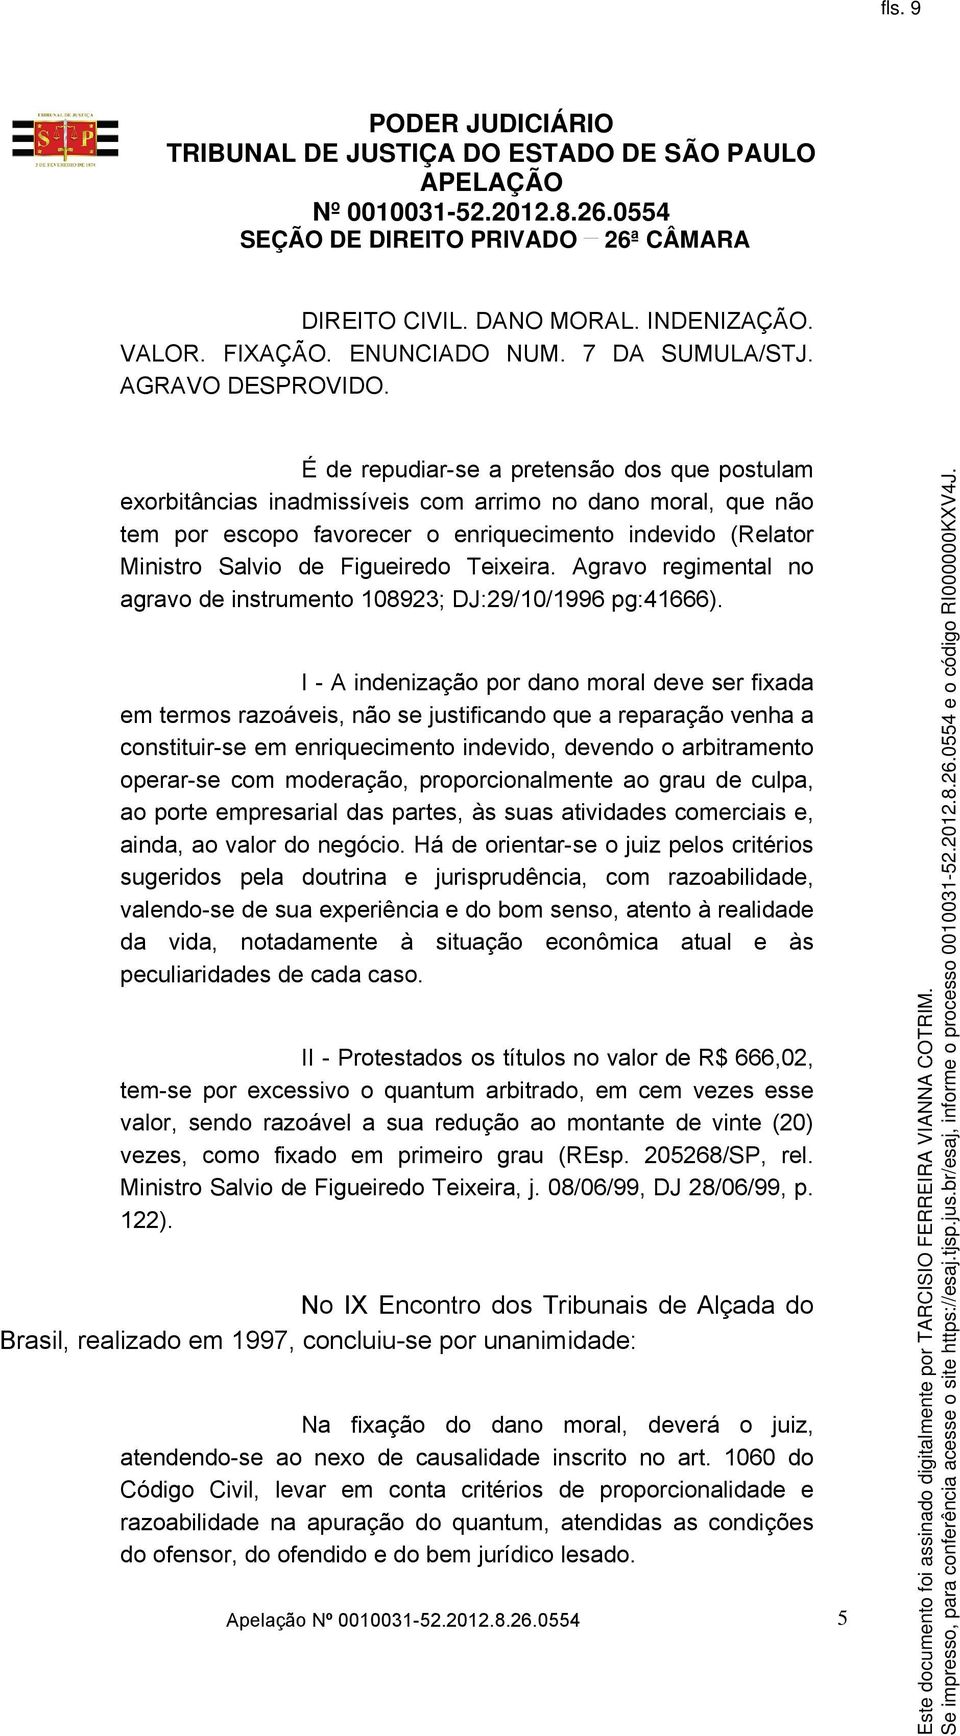 Teixeira. Agravo regimental no agravo de instrumento 108923; DJ:29/10/1996 pg:41666).